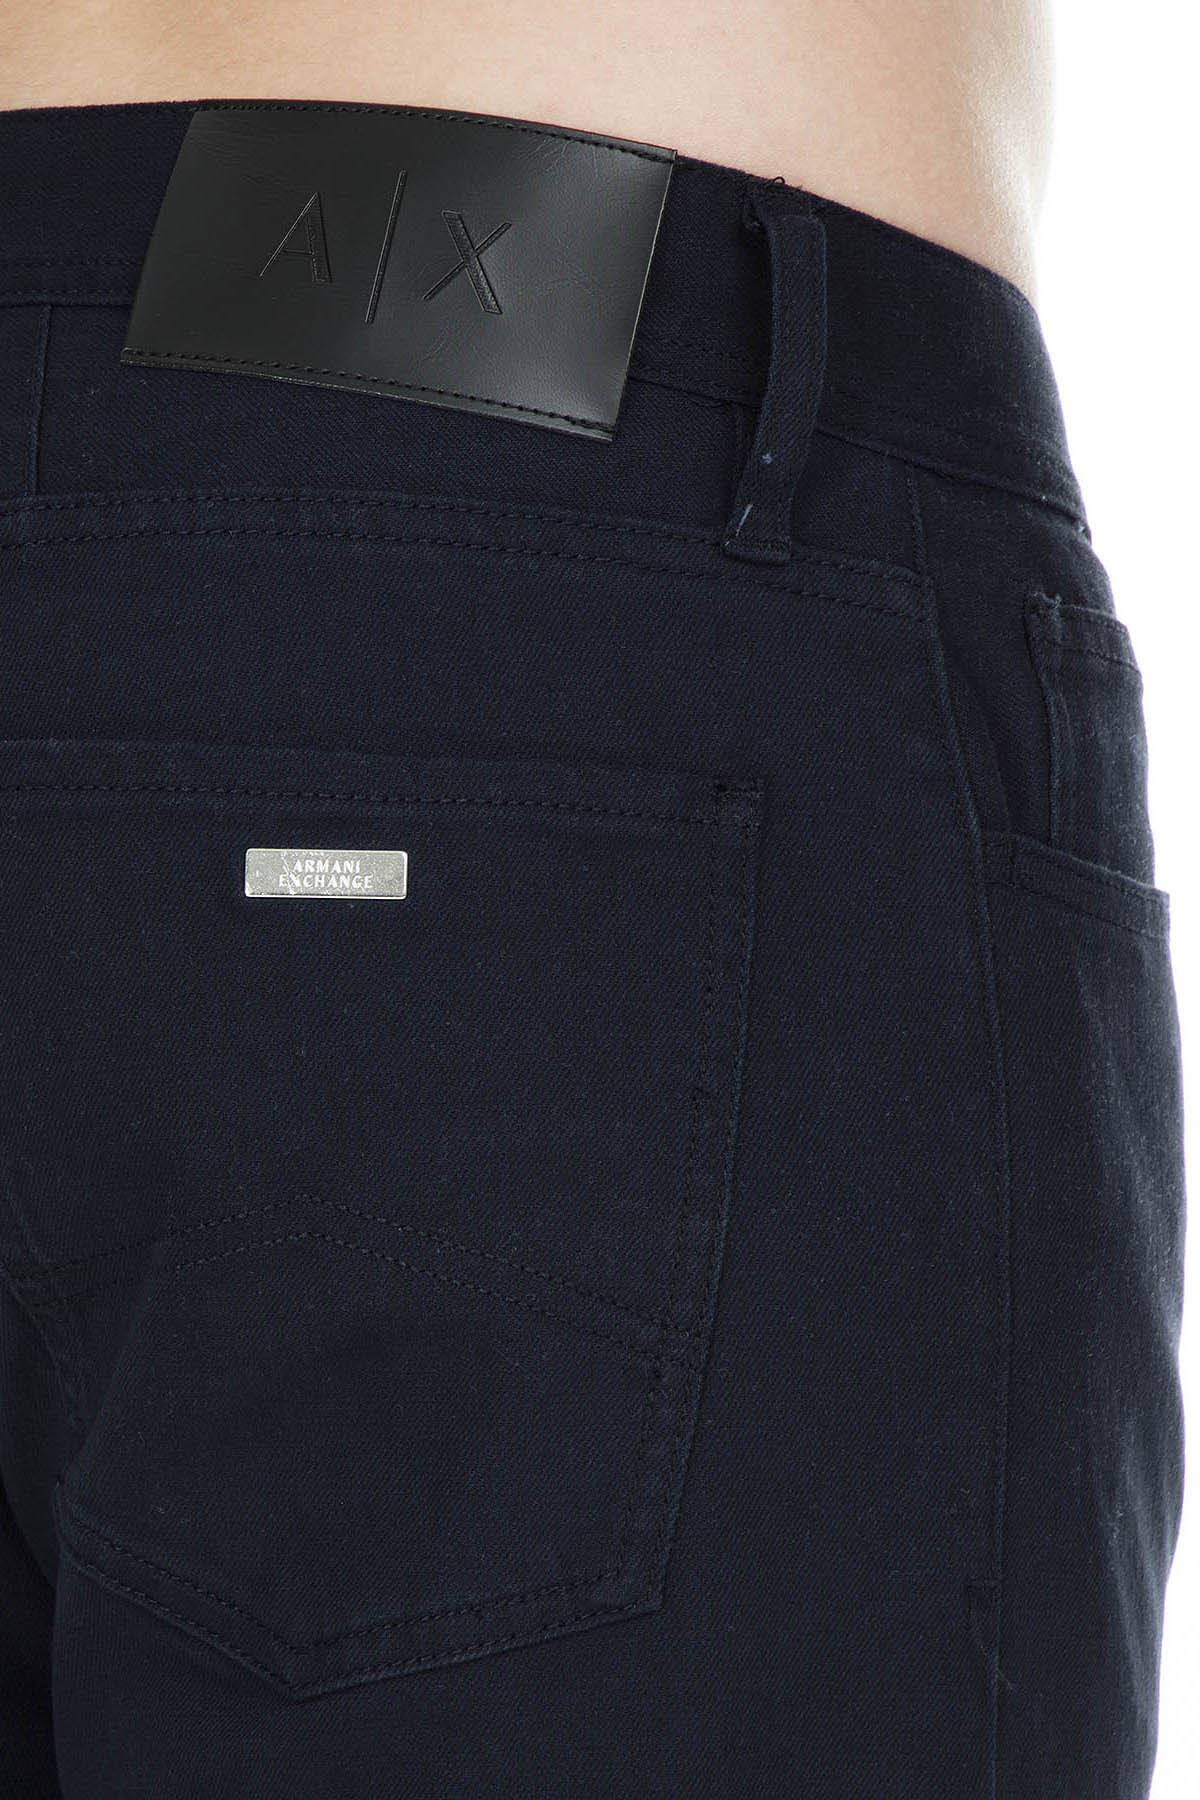 Armani Exchange J16 Jeans Erkek Pamuklu Pantolon 8NZJ16 Z3CAZ 1510 LACİVERT